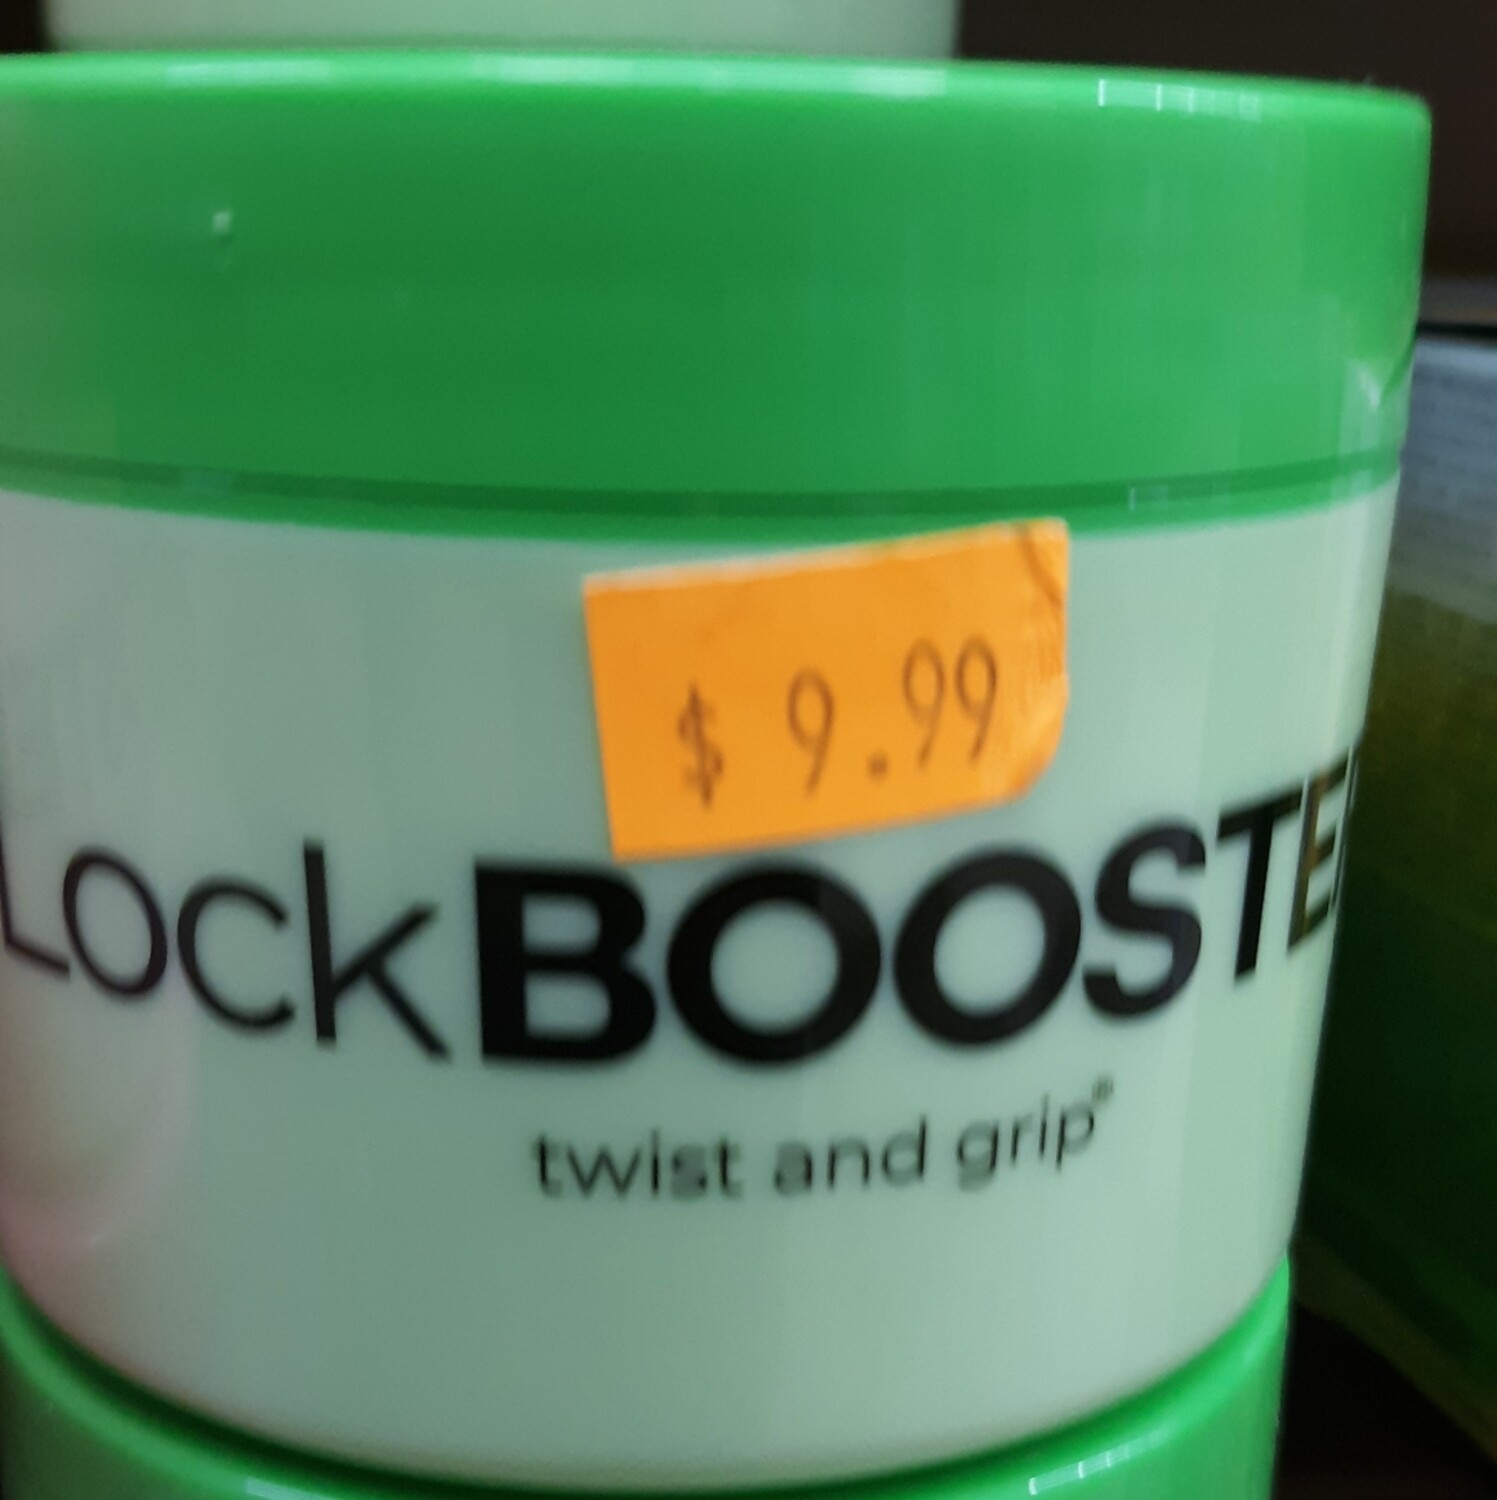 LockBooster Twist And Grip (Green)